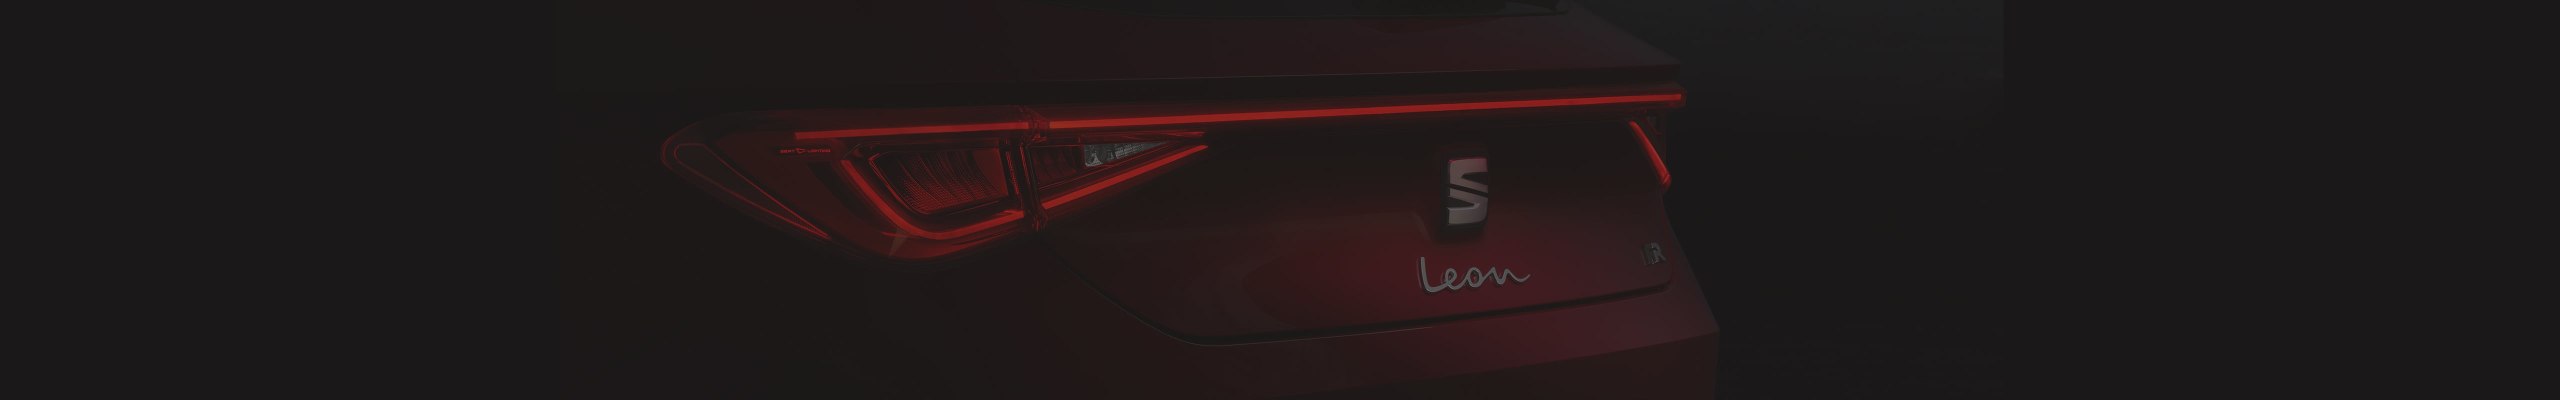 Der neue SEAT Leon im Rampenlicht